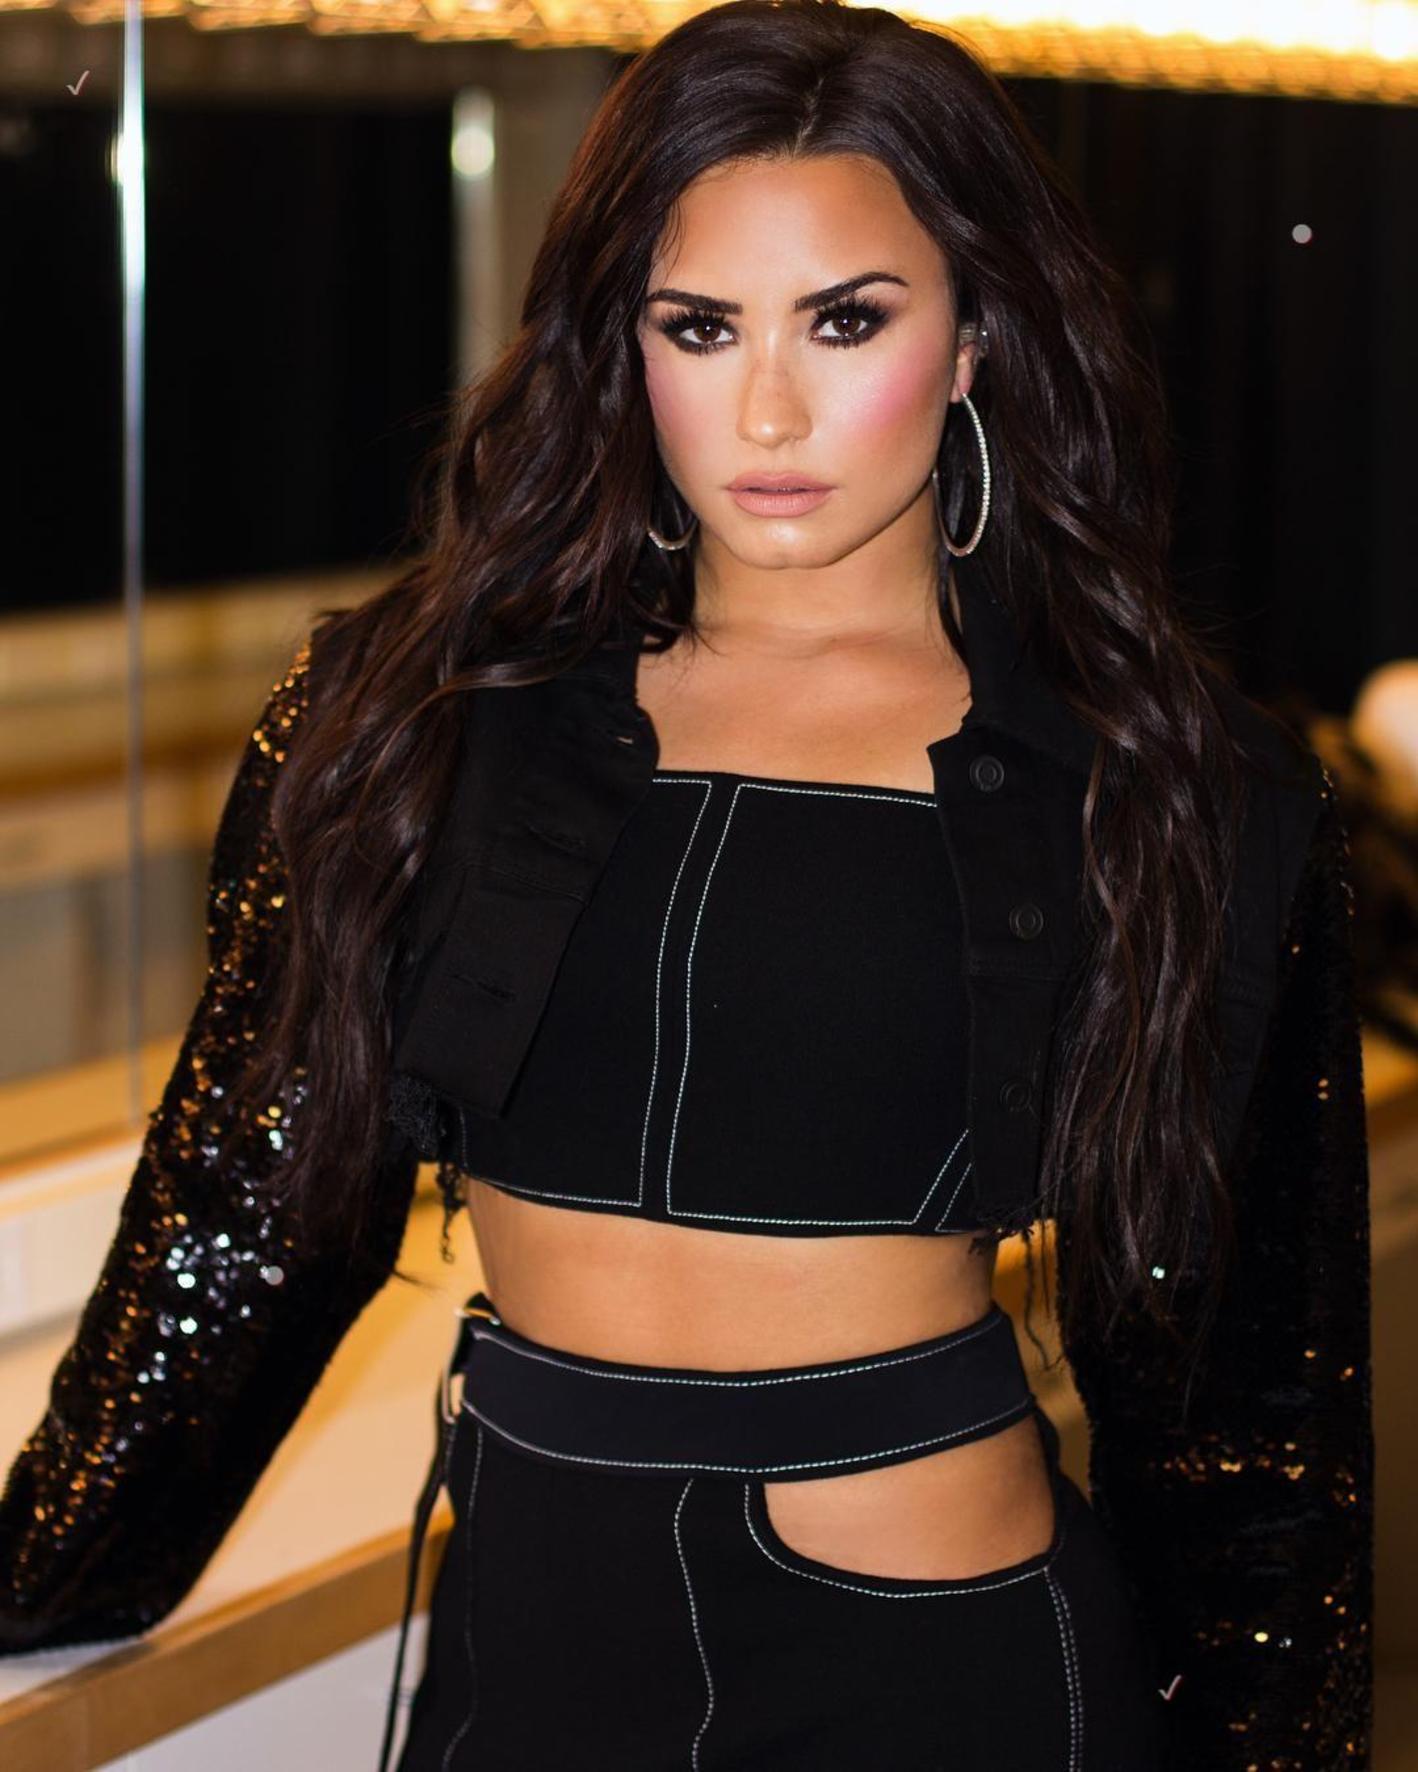 Elsírta magát a színpadon Demi Lovato – videó - Blikk